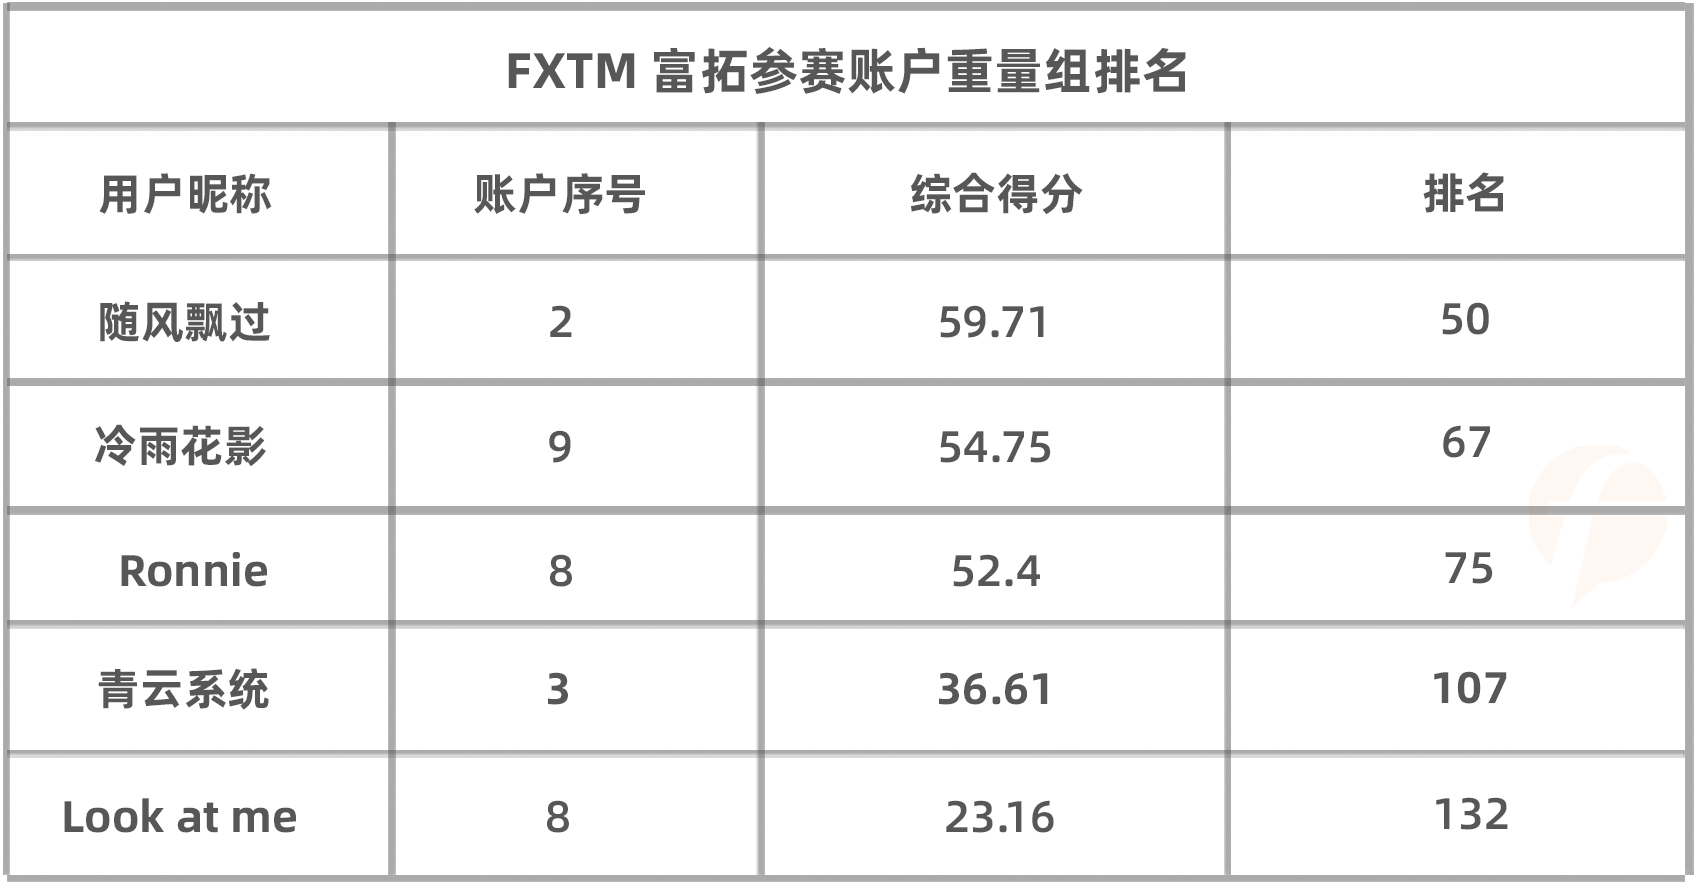 在轻量组排名最高的FXTM 富拓选手@THU_Quant 竟是清华大学在读博士？